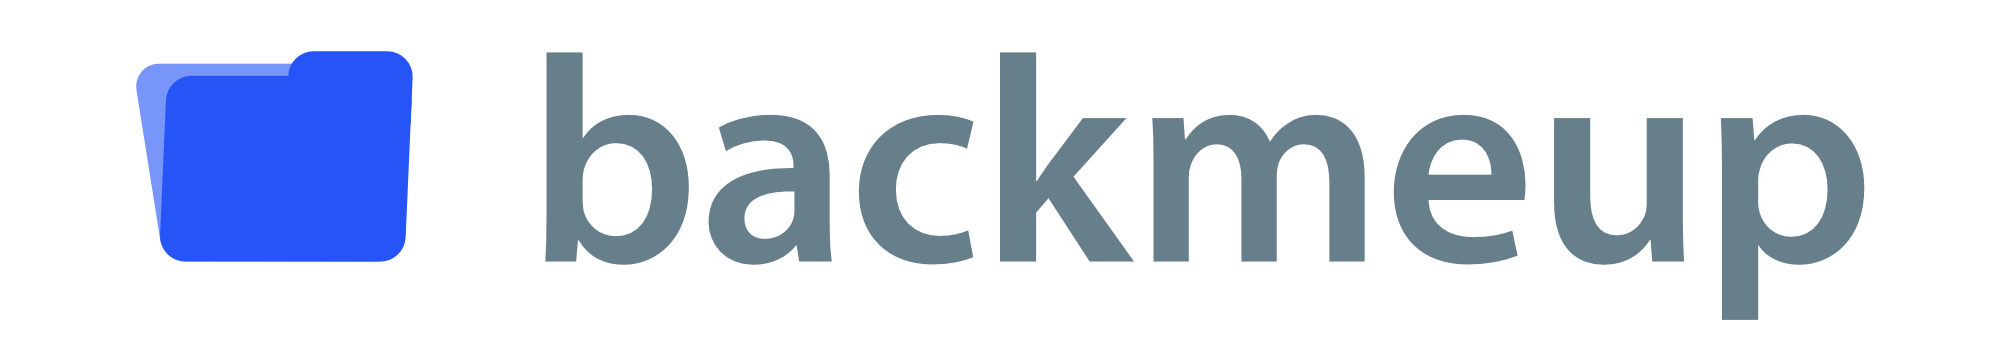 backmeup logo